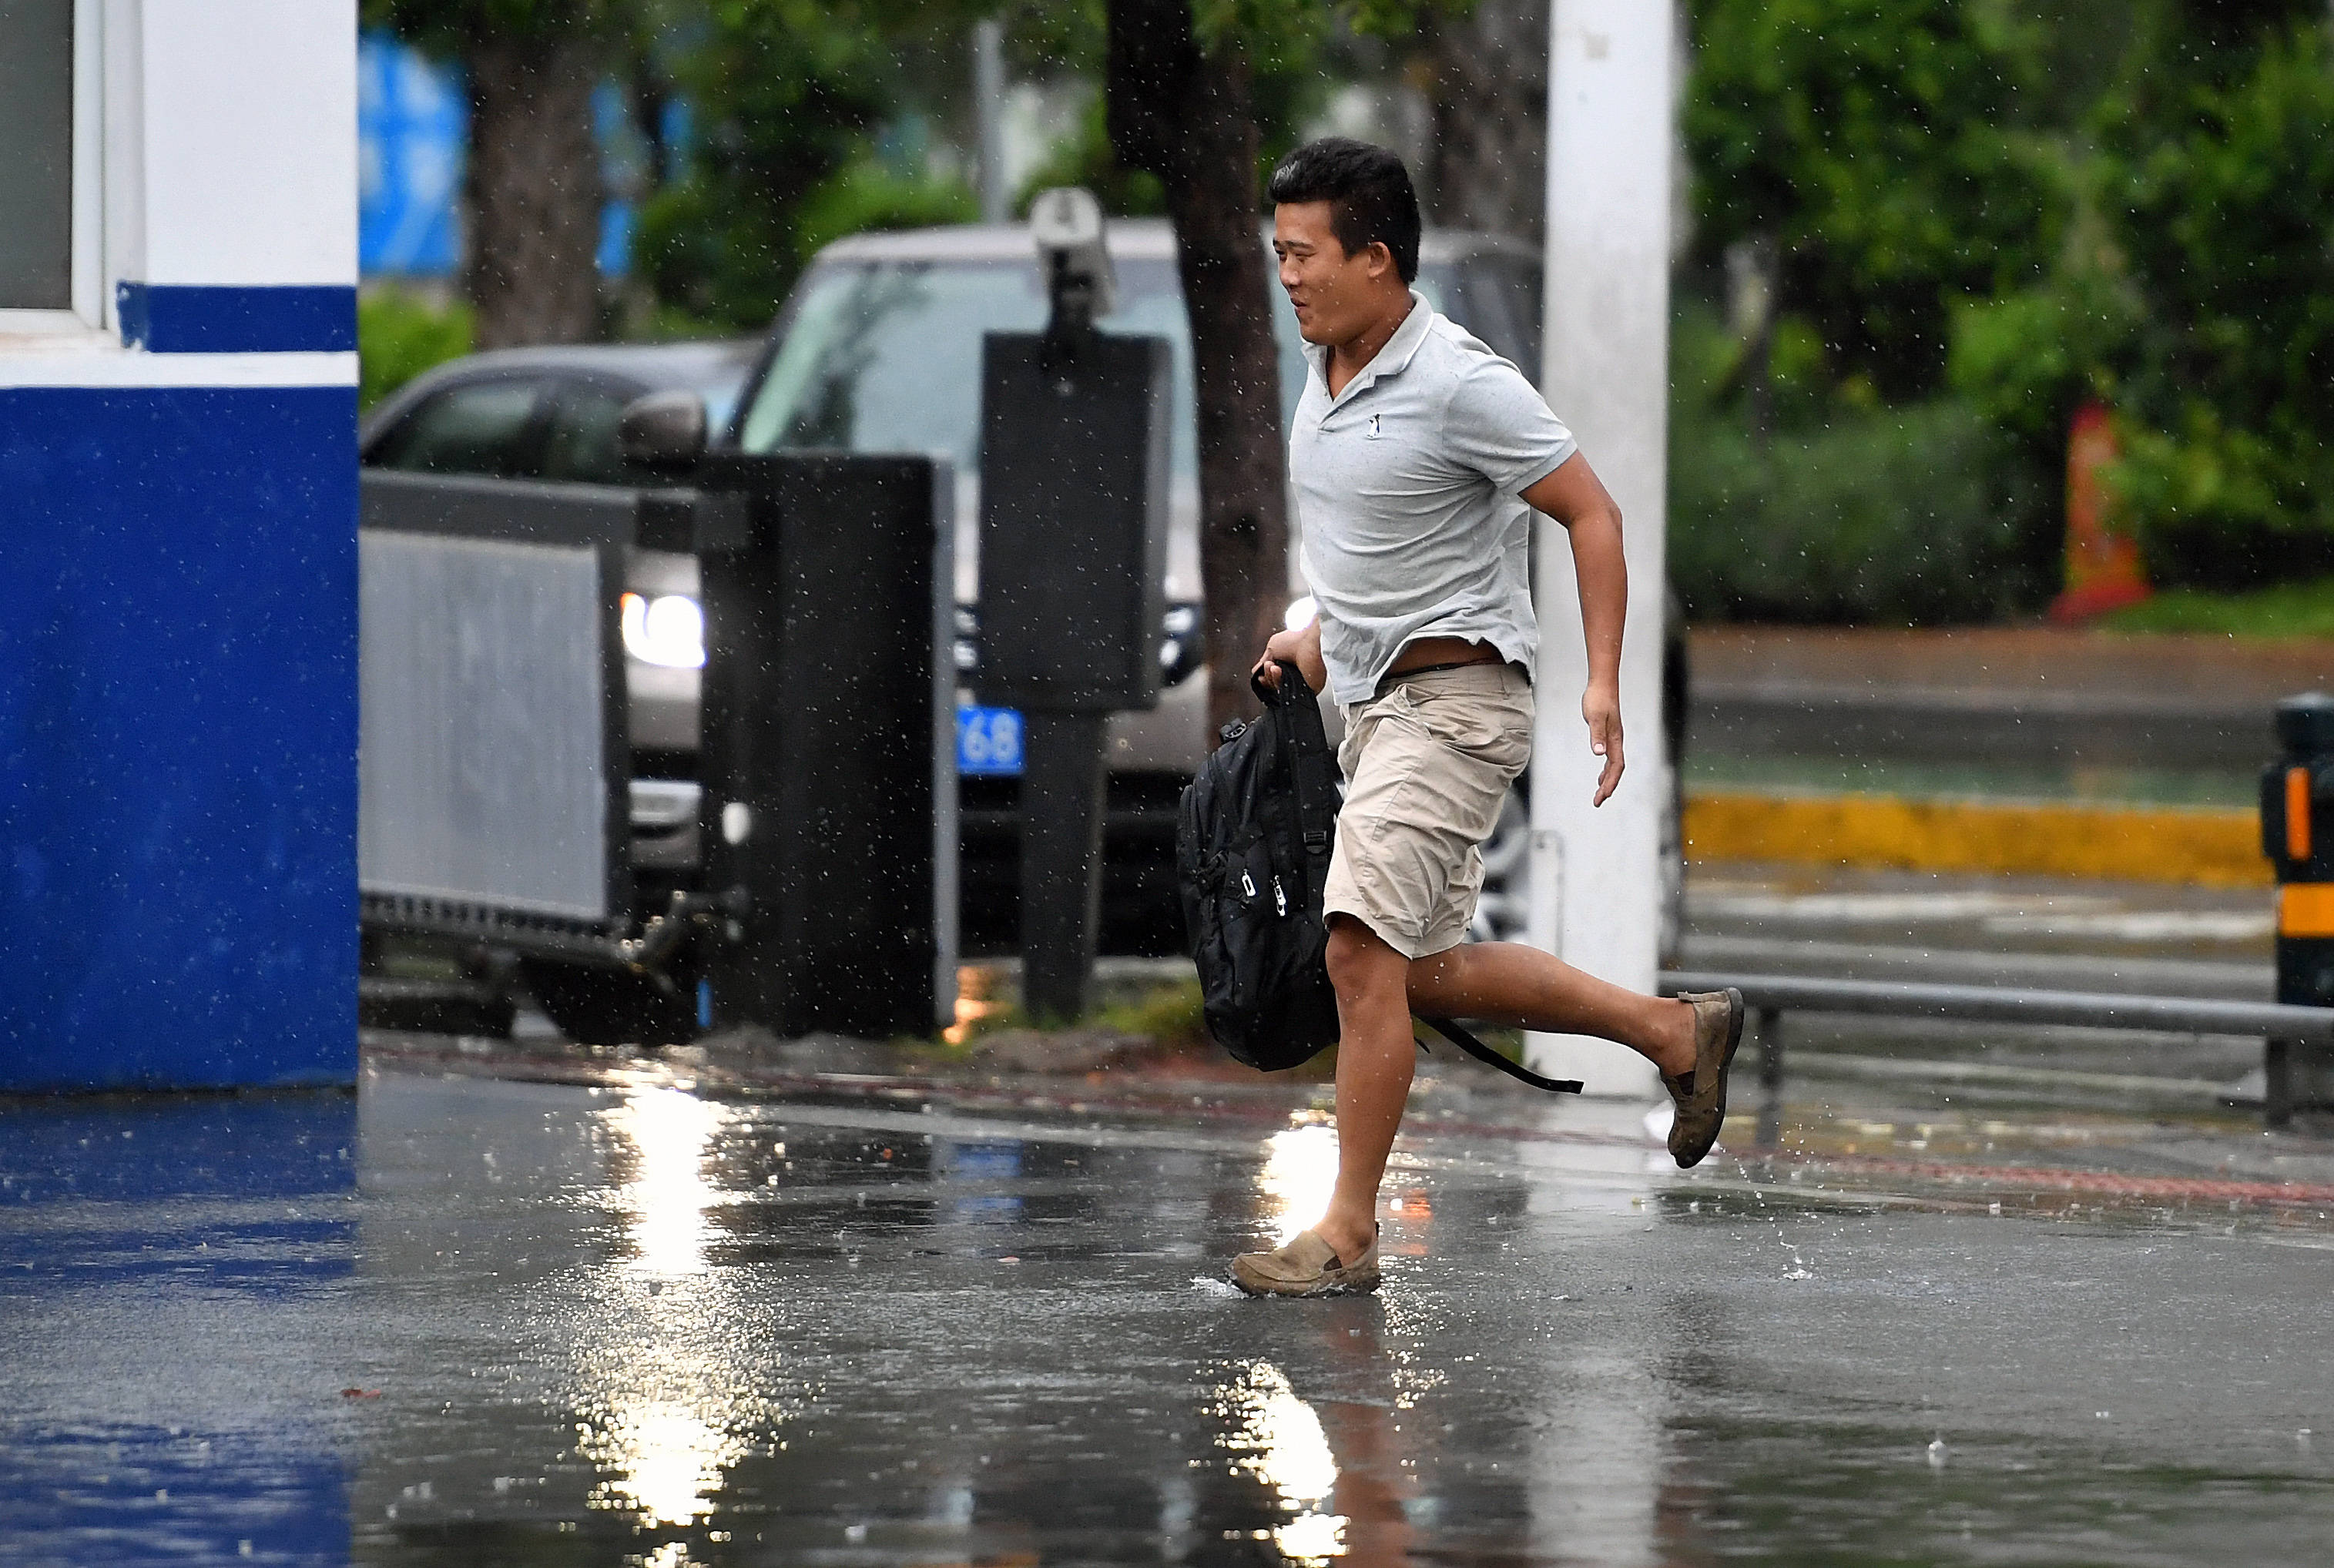 10月8日,在海南省海口市,一名行人在雨中奔跑